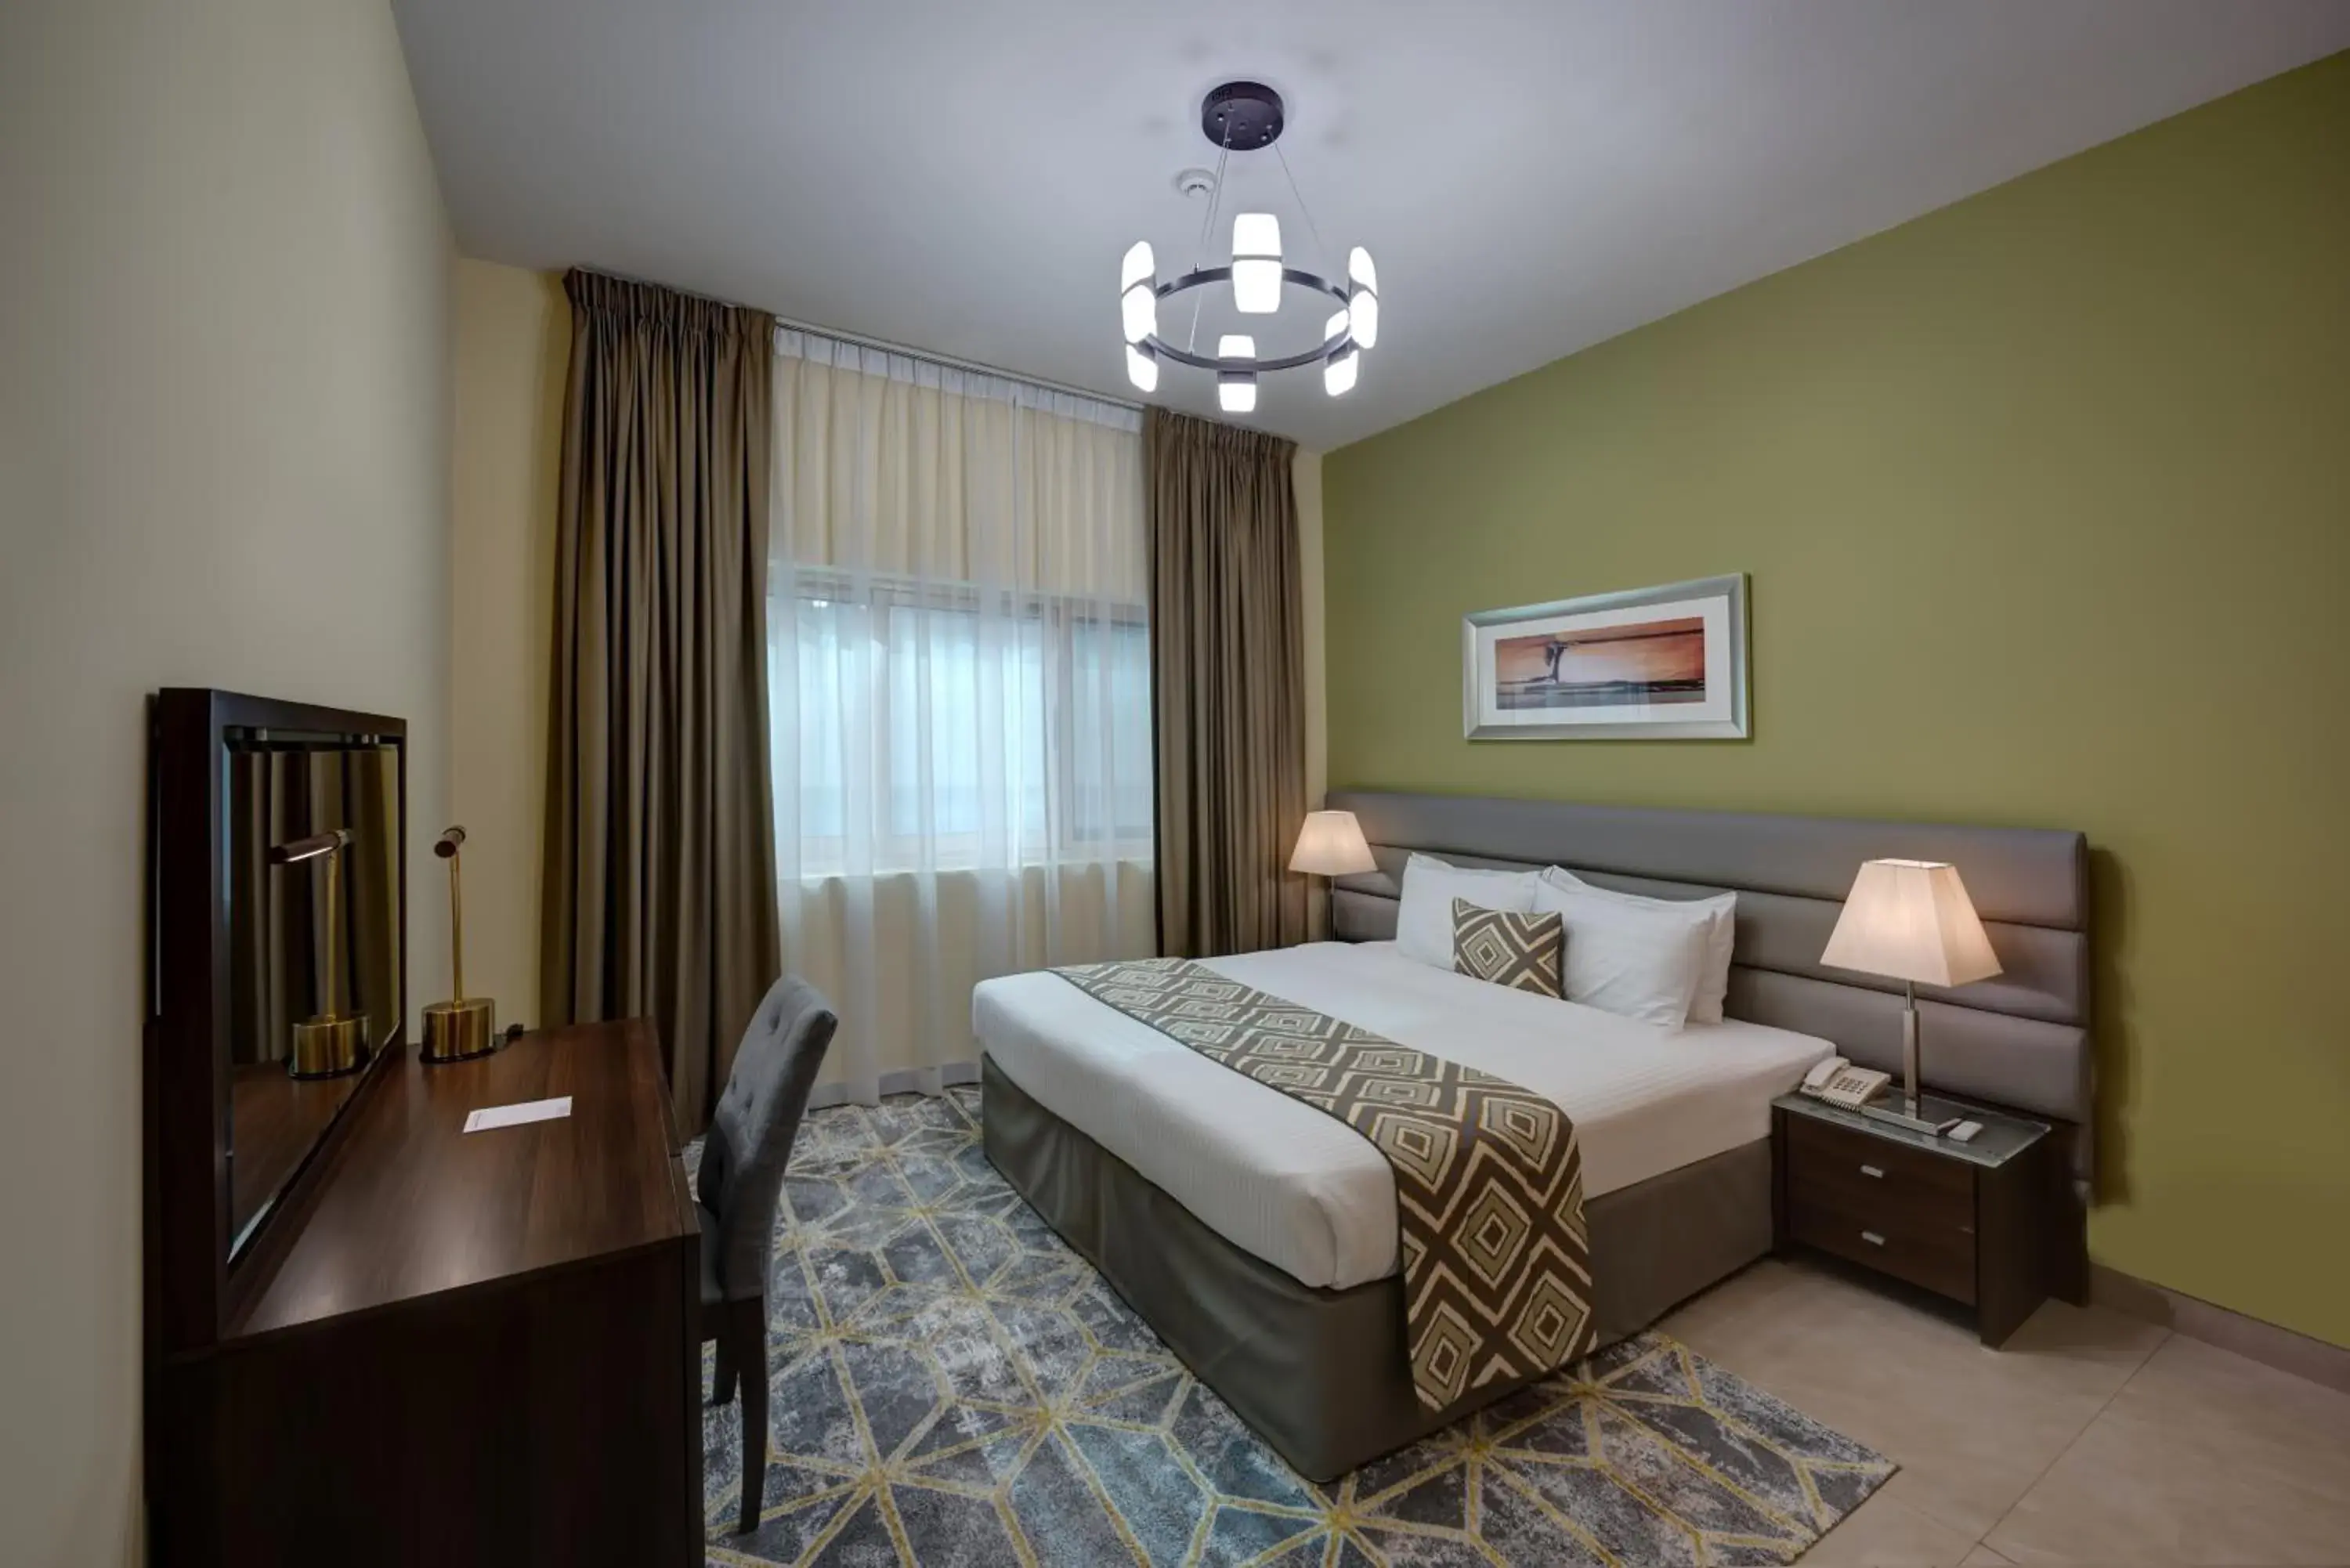 Bedroom, Bed in Radiance Premium Suites